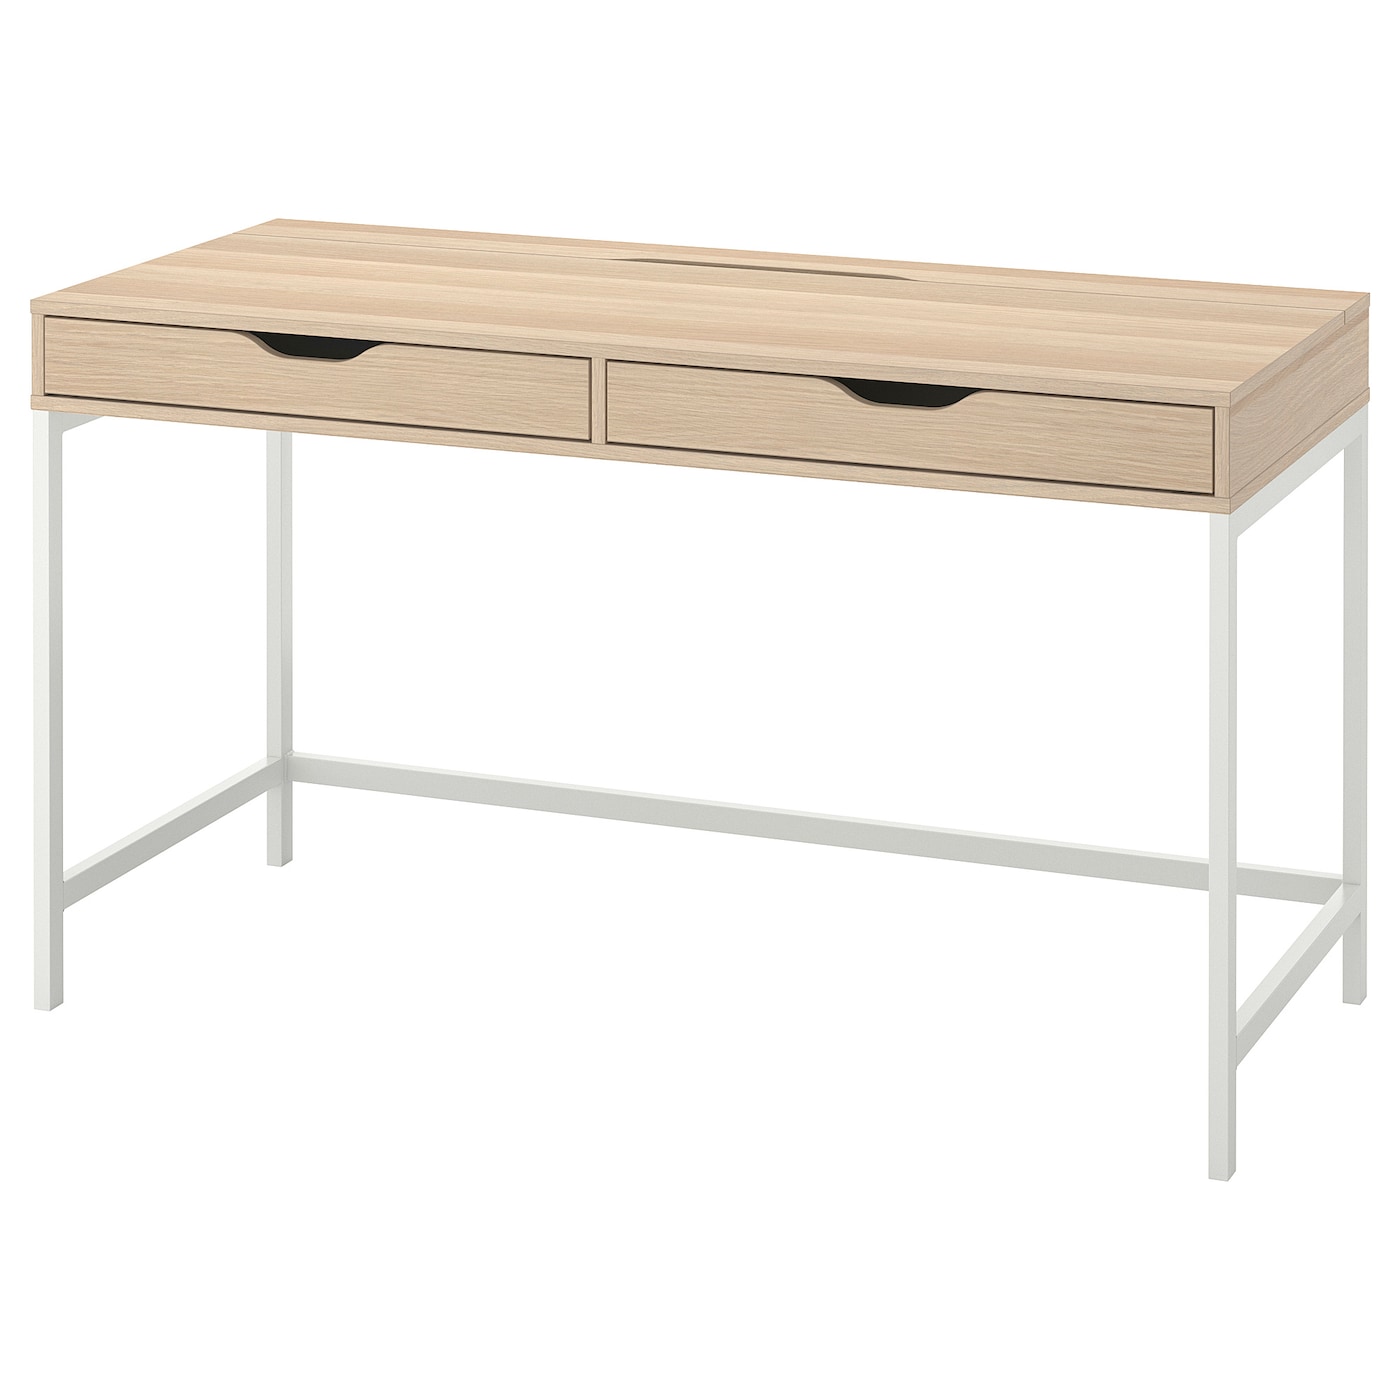 Письменный стол с ящиками - IKEA ALEX/АЛЕКС ИКЕА, 132х58 см, под беленый дуб/белый